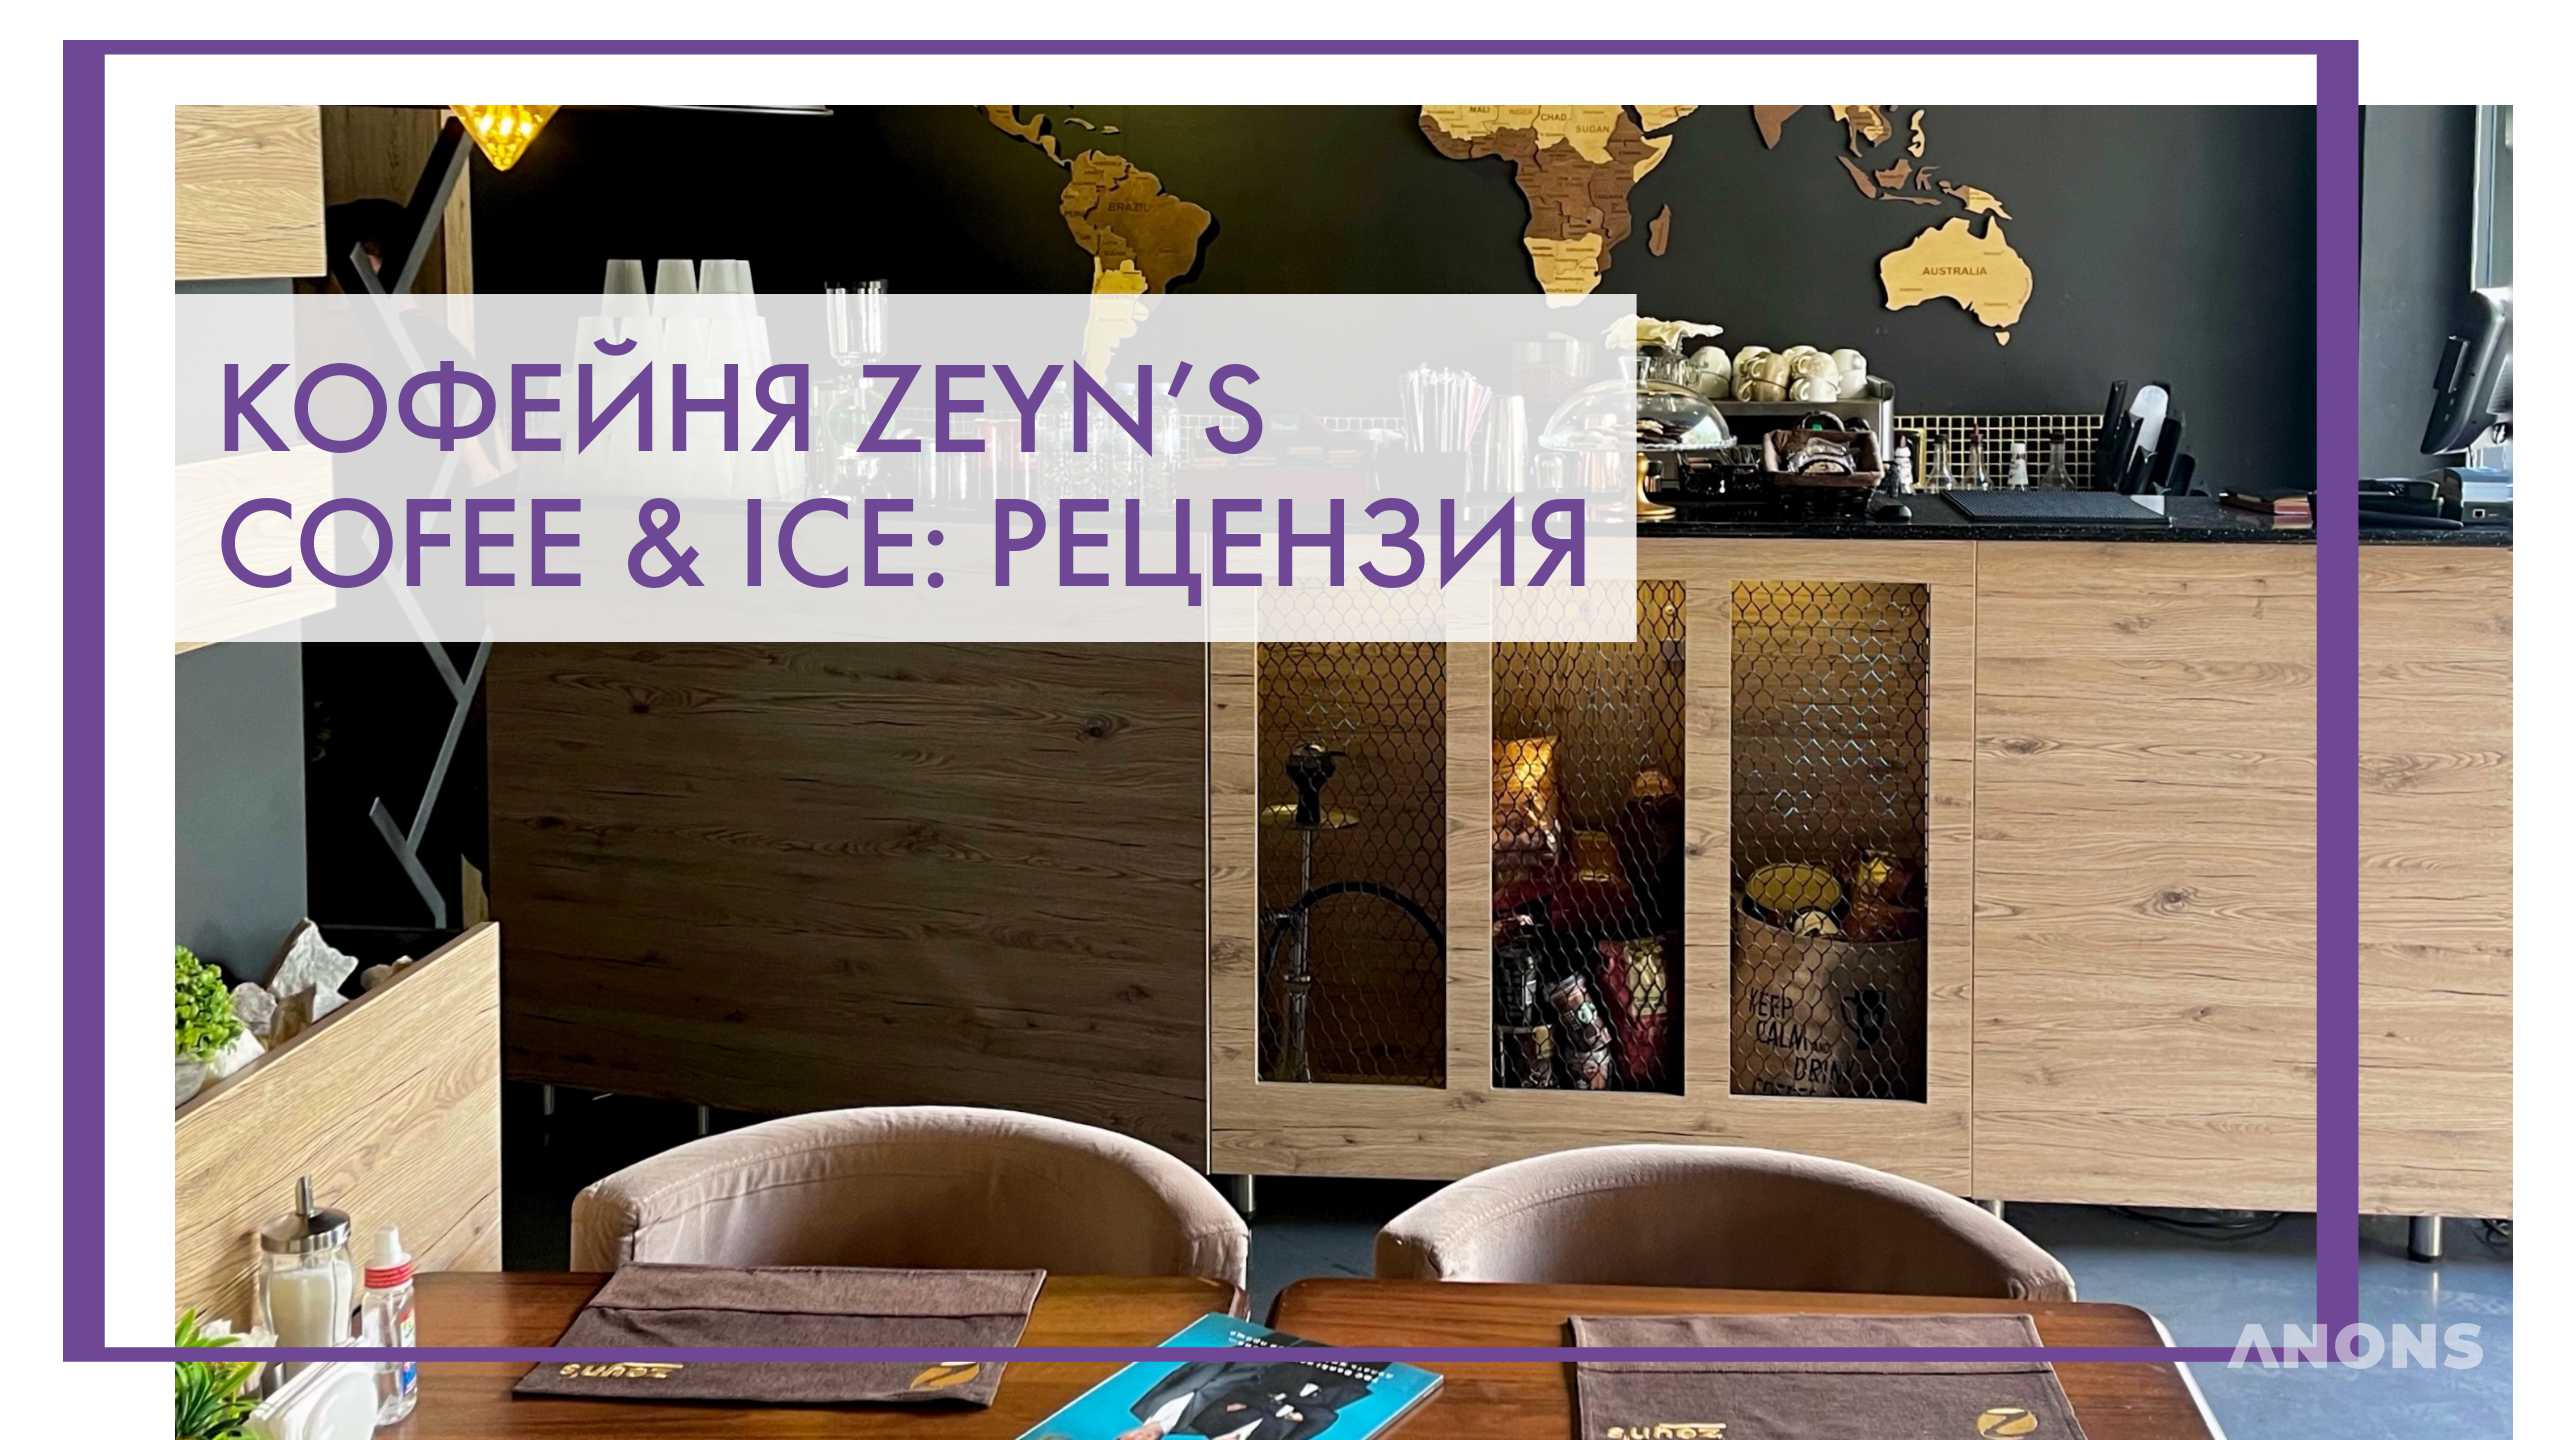 Кофейня Zeyn's Coffee & Ice - рецензия